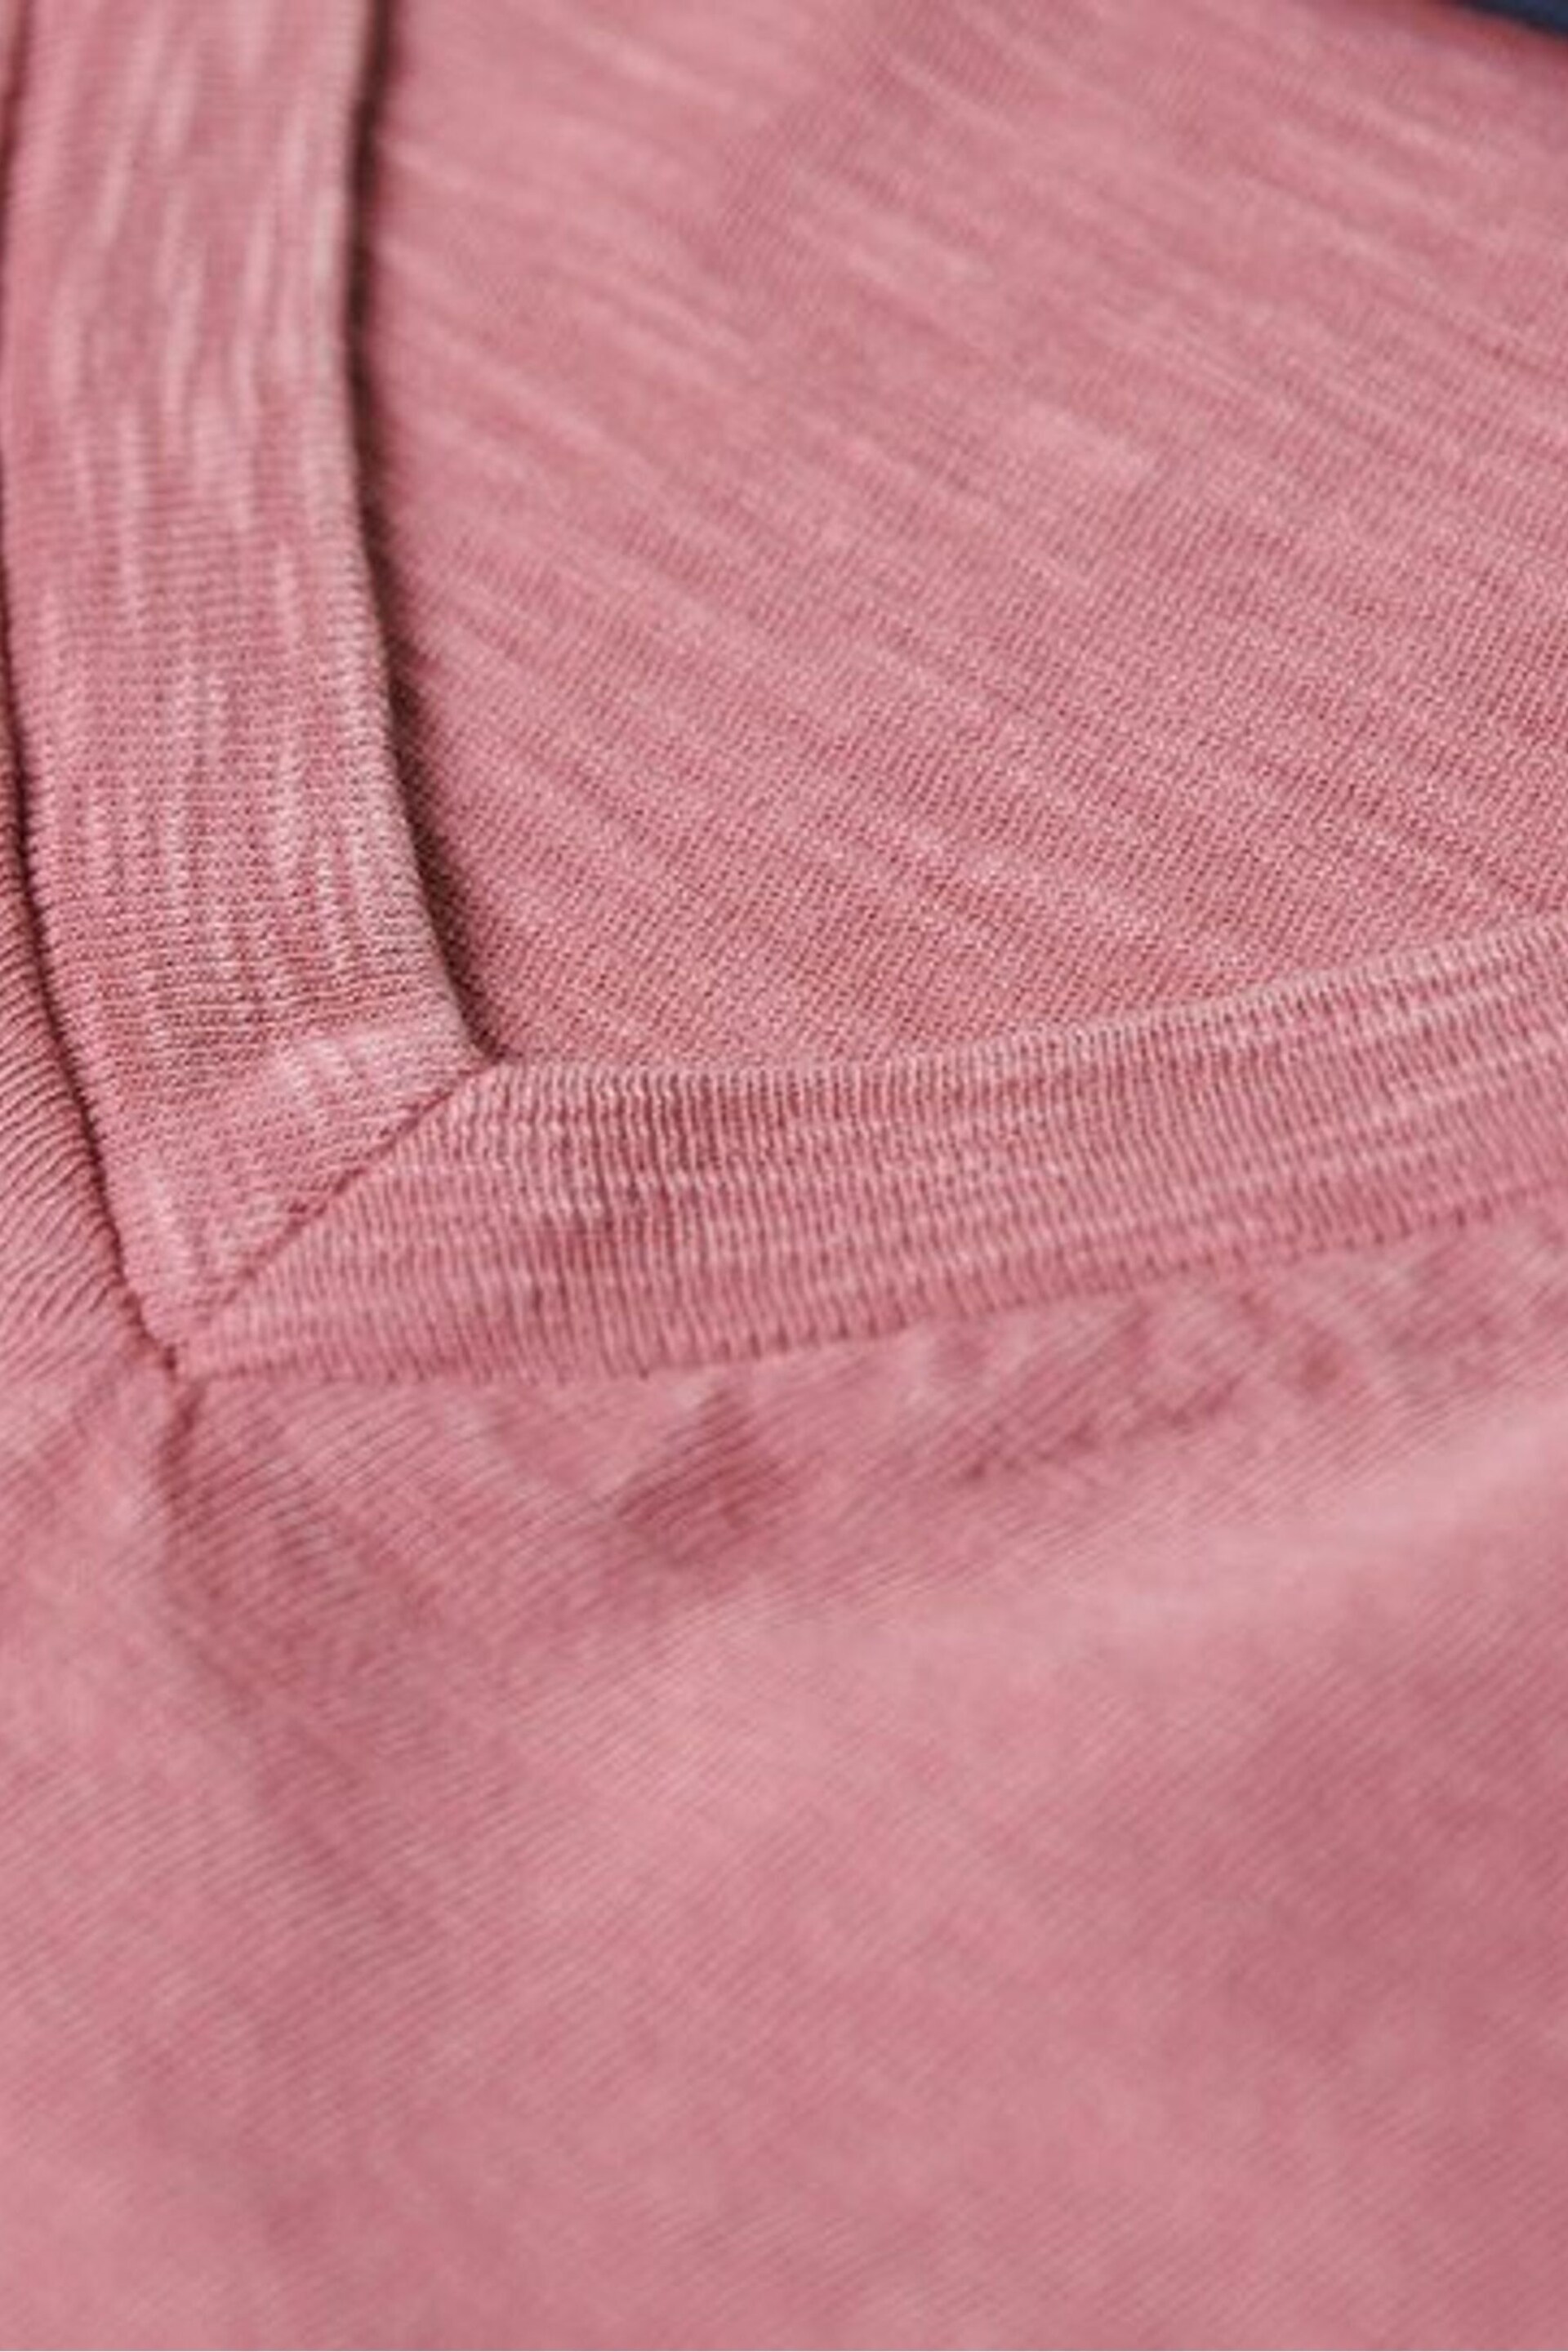 Superdry Pink Superdry V-Neck Slub Short Sleeve T-Shirt - Image 5 of 6